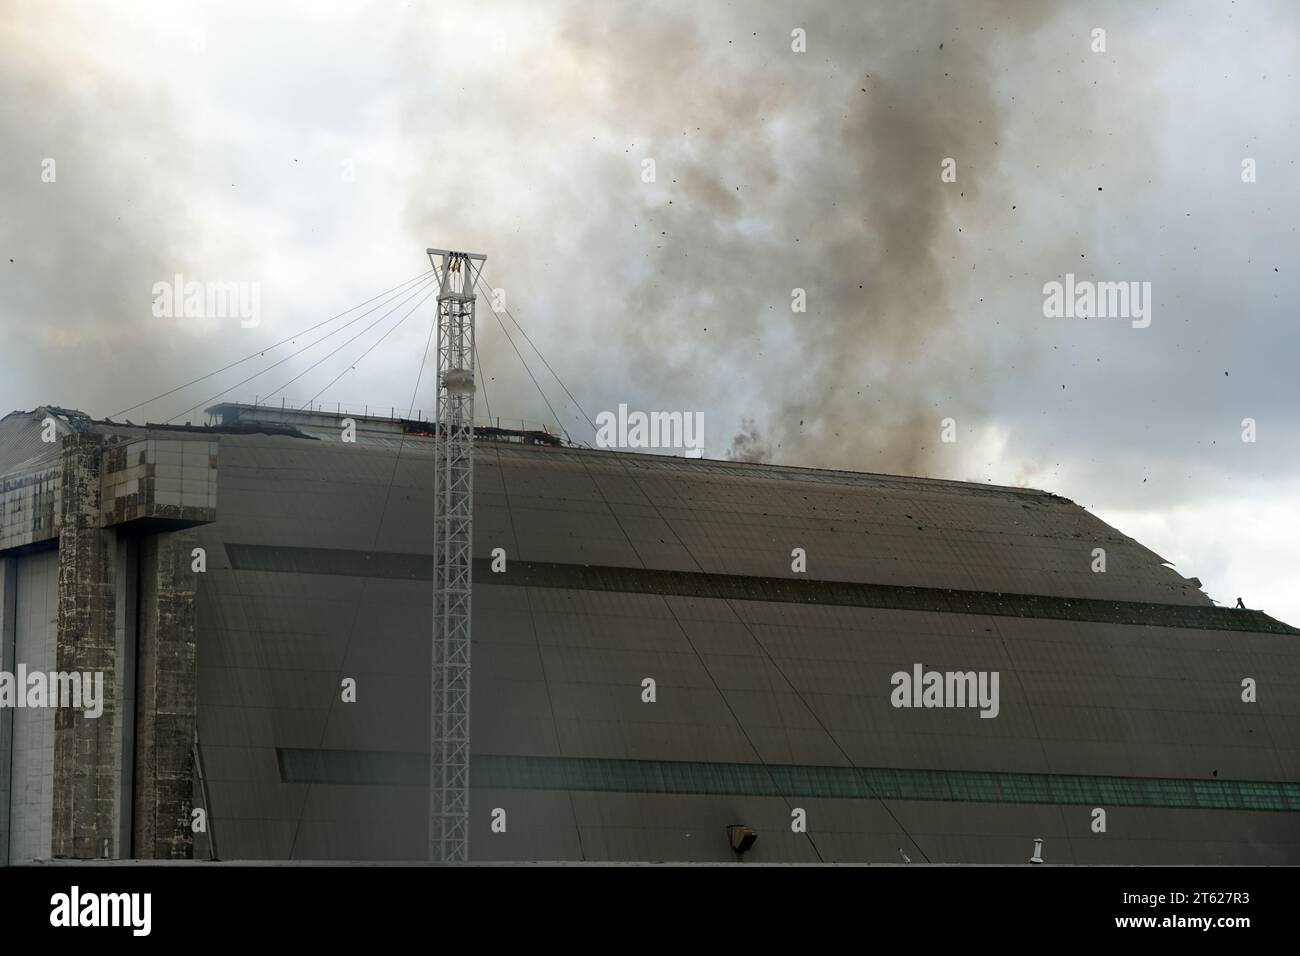 Cintre de Blimp Navy en feu Banque D'Images